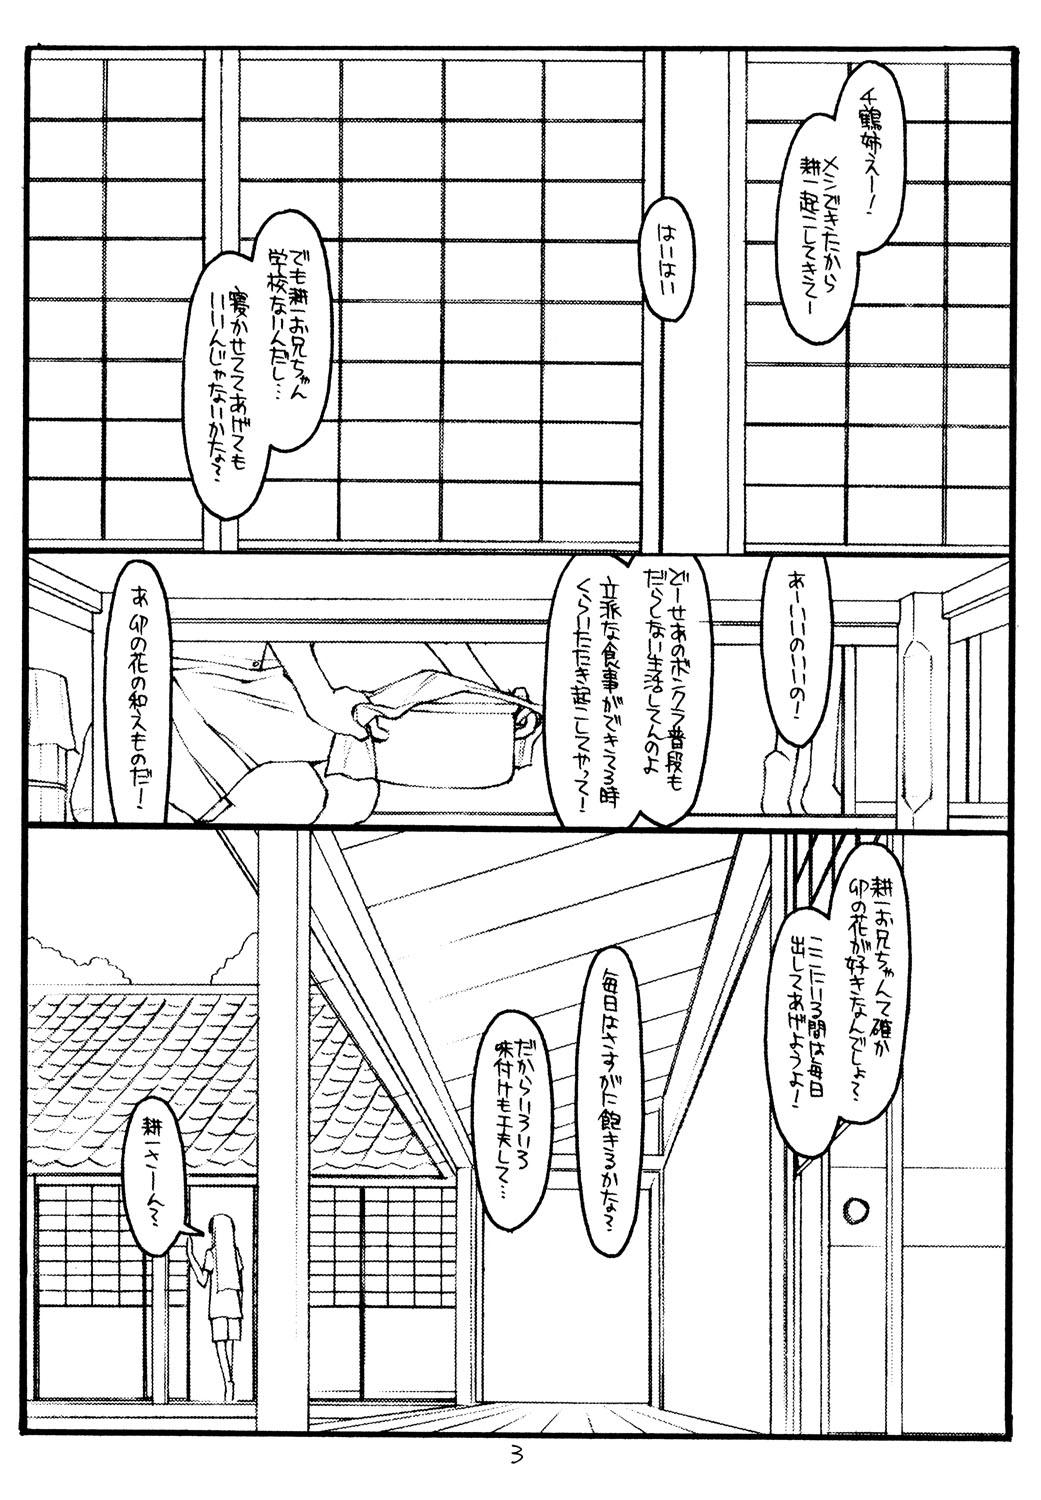 Family Kizuna - Kizuato Style - Page 2